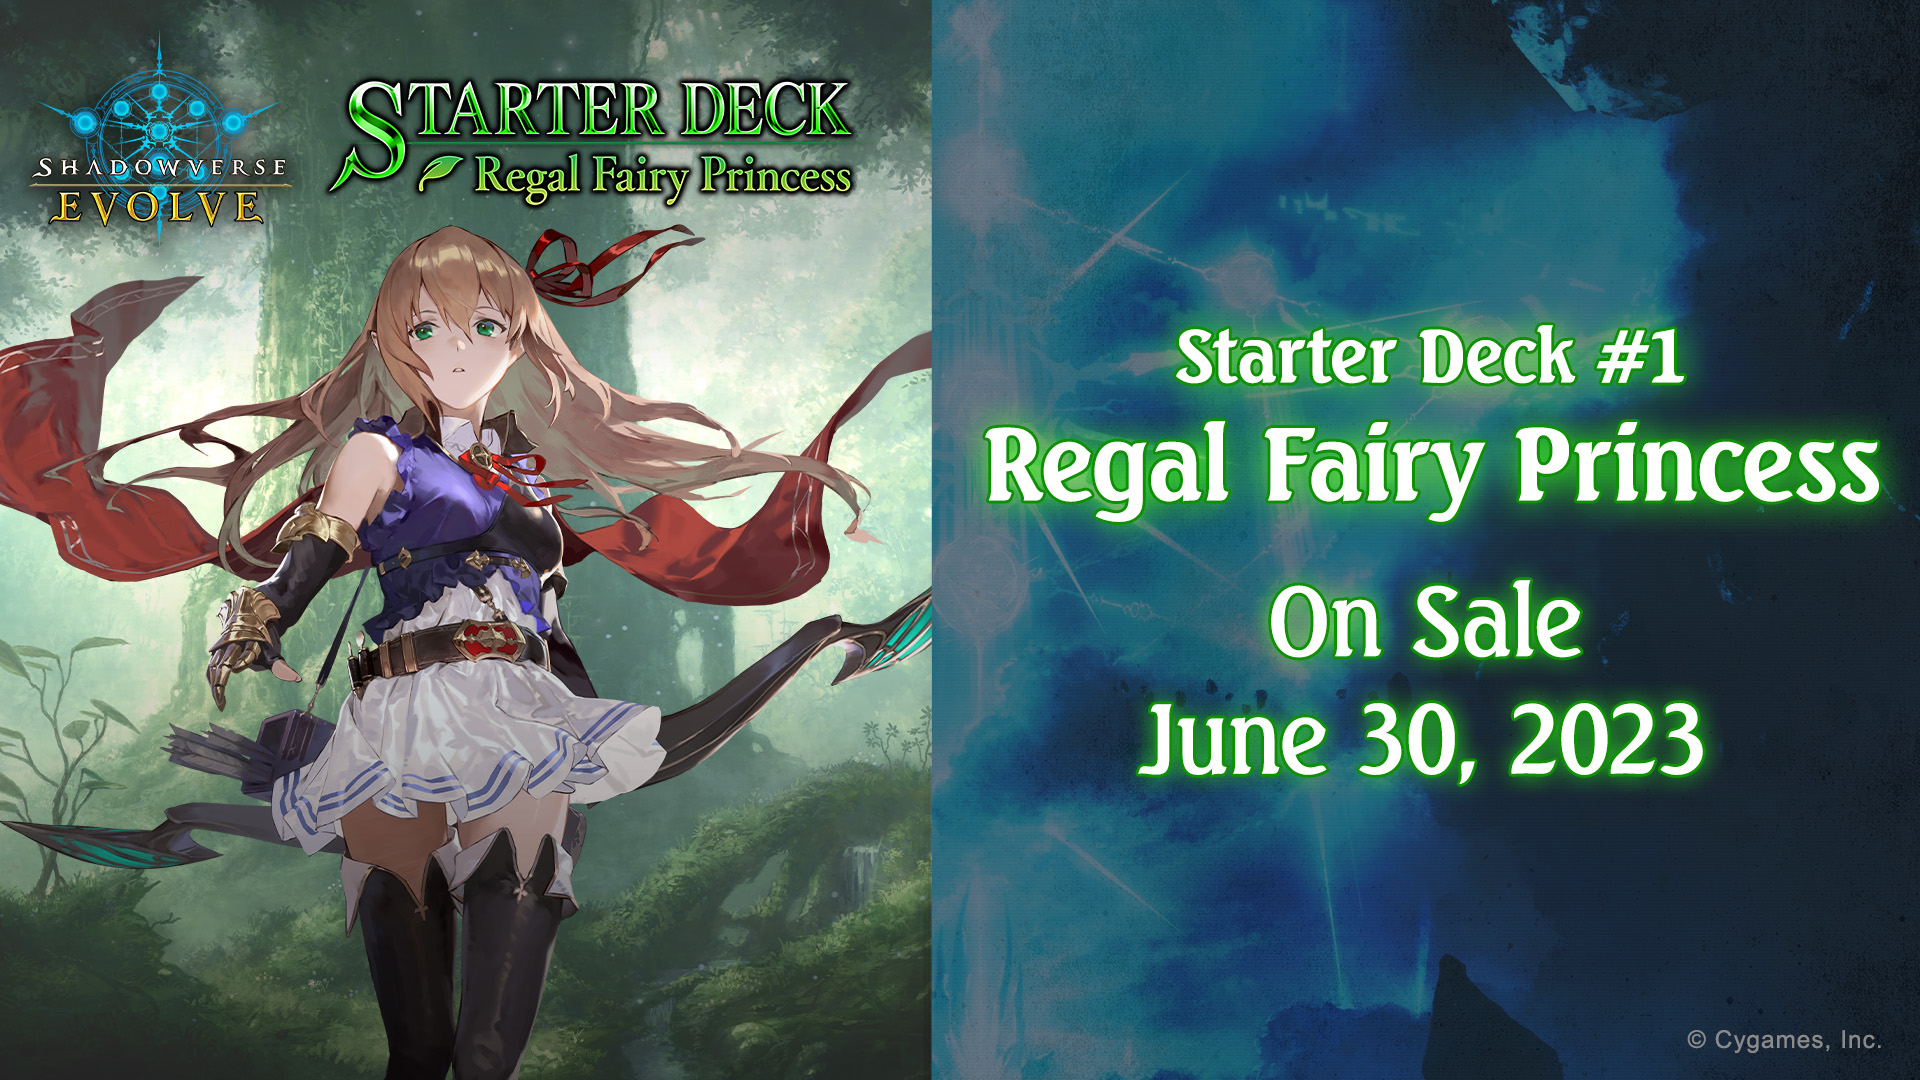 Starter Deck #1 “Regal Fairy Princess”